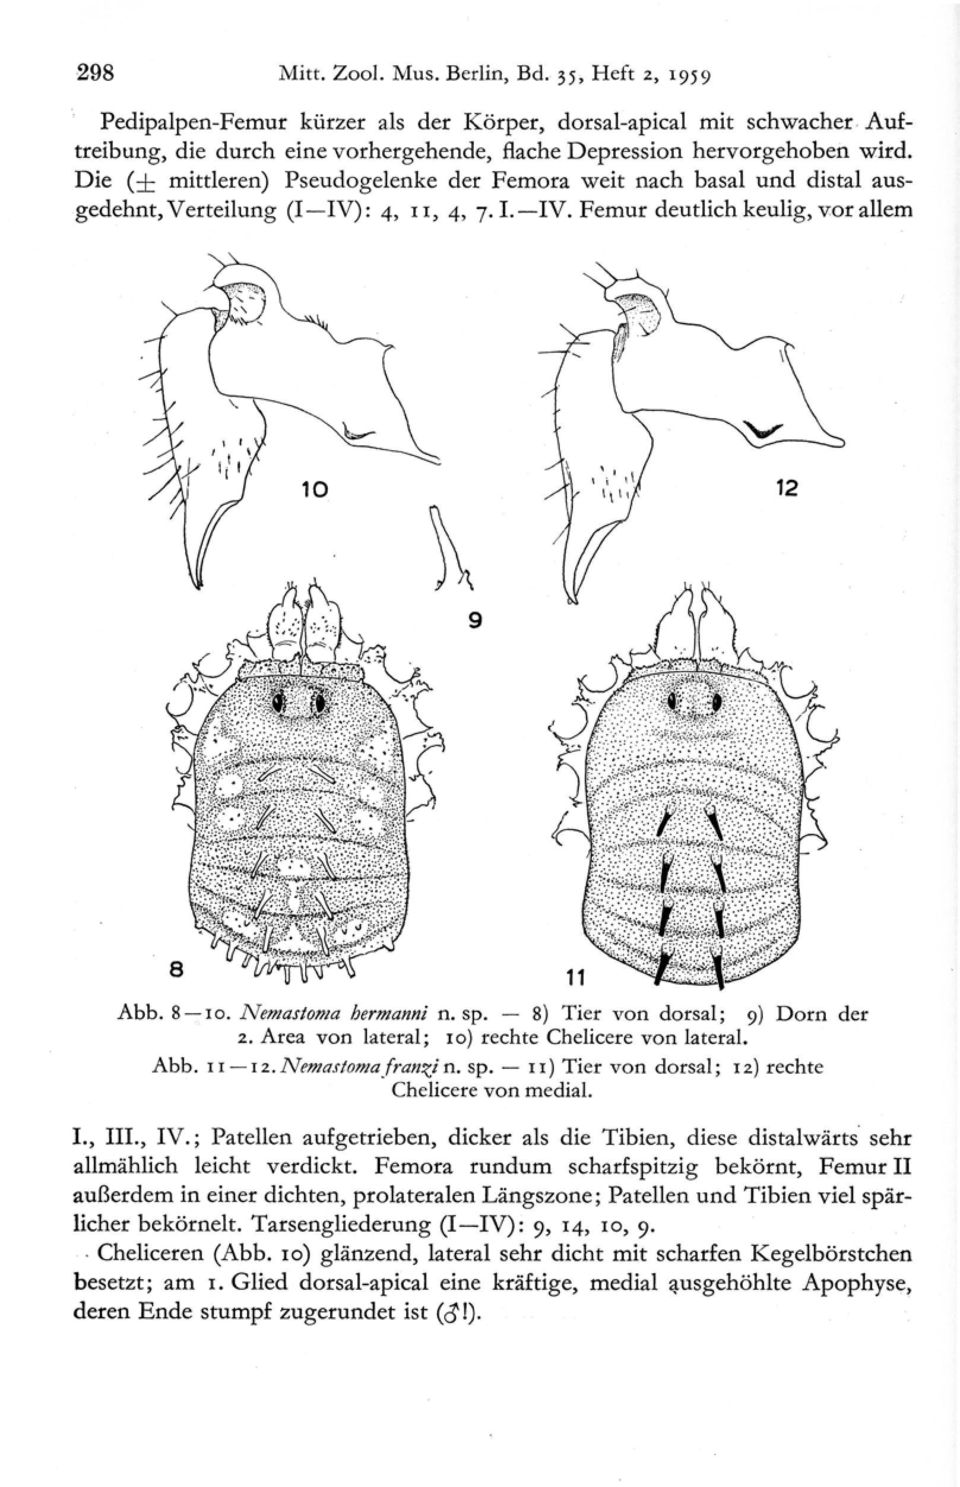 8) Tier von dorsal ; 9) Dorn der 2. Area von lateral ; l o) rechte Chelicere von lateral. Abb. 11-12. Nemastoma franzi n. sp. 11) Tier von dorsal ; 12) recht e Chelicere von medial. I., III., IV.